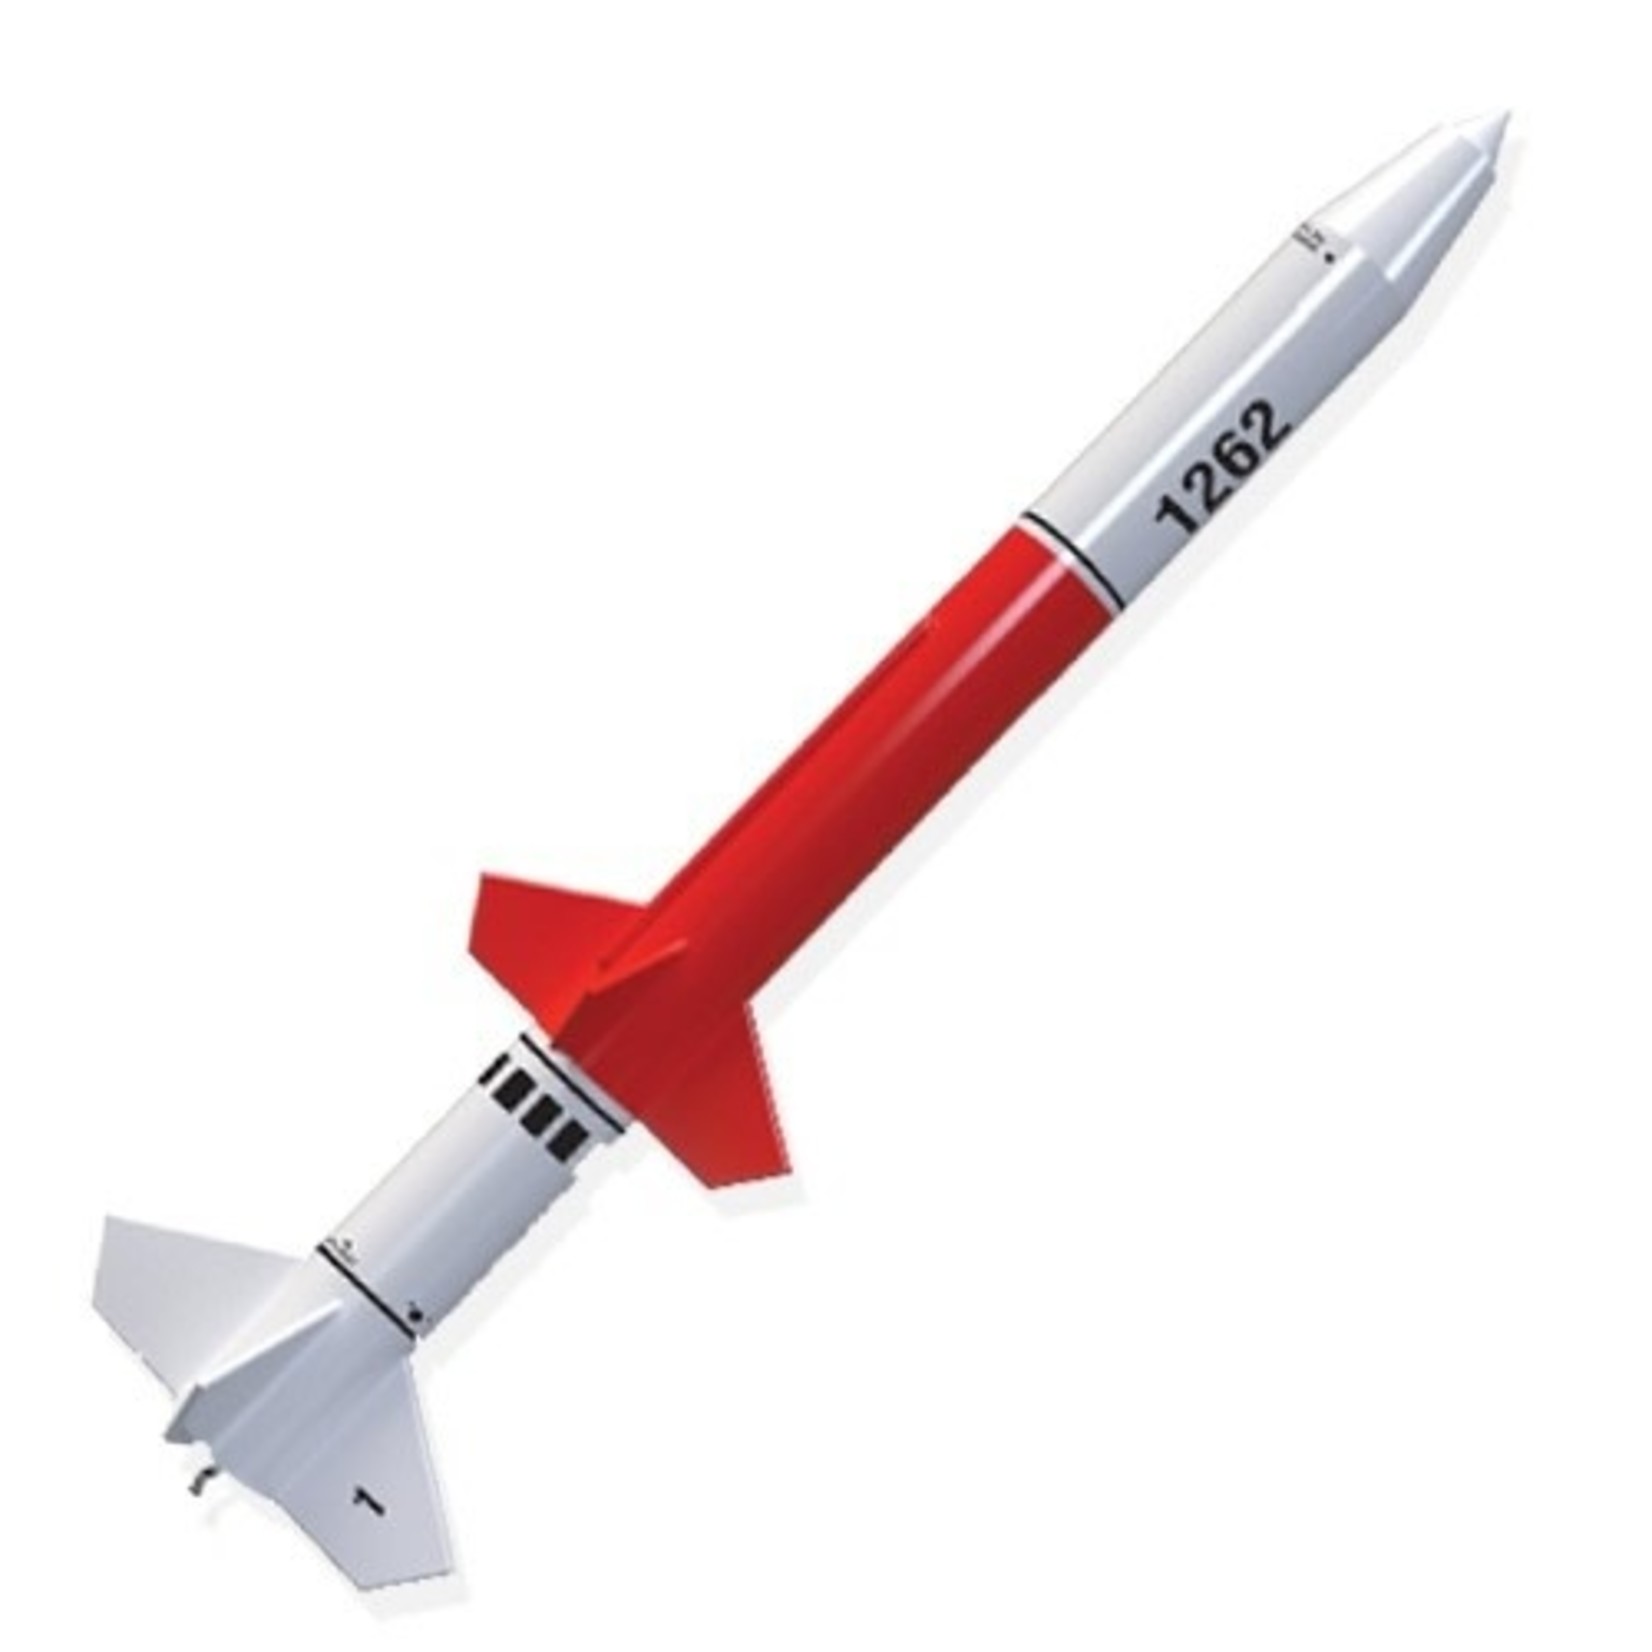 Estes EST7266 Red Nova Rocket